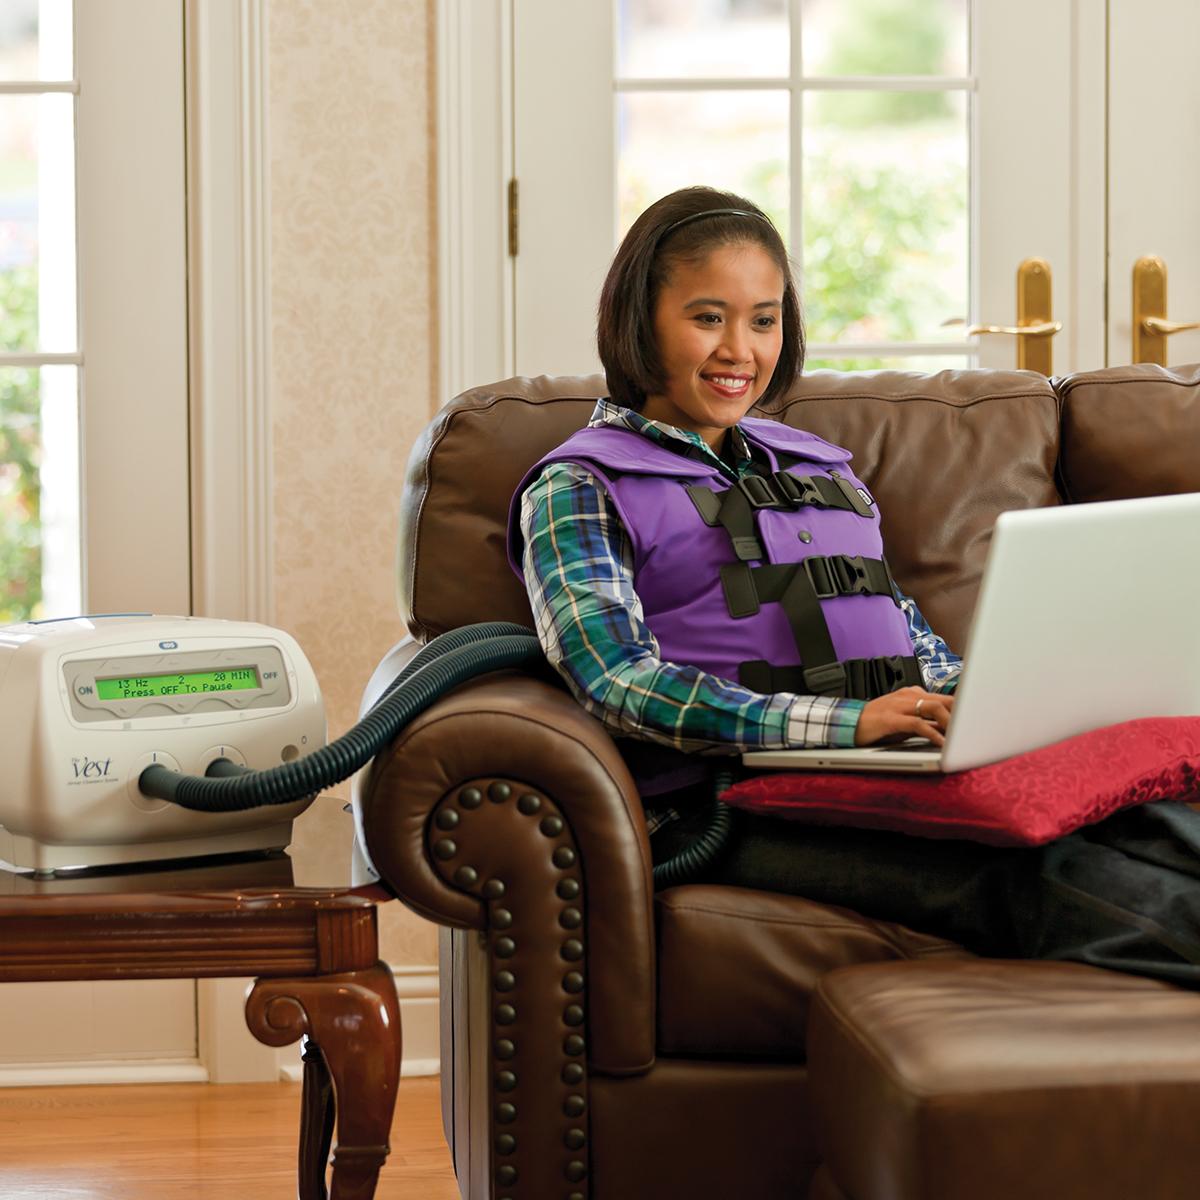 Una giovane donna lavora al computer mentre utilizza il sistema Vest indossando un giubbotto viola.